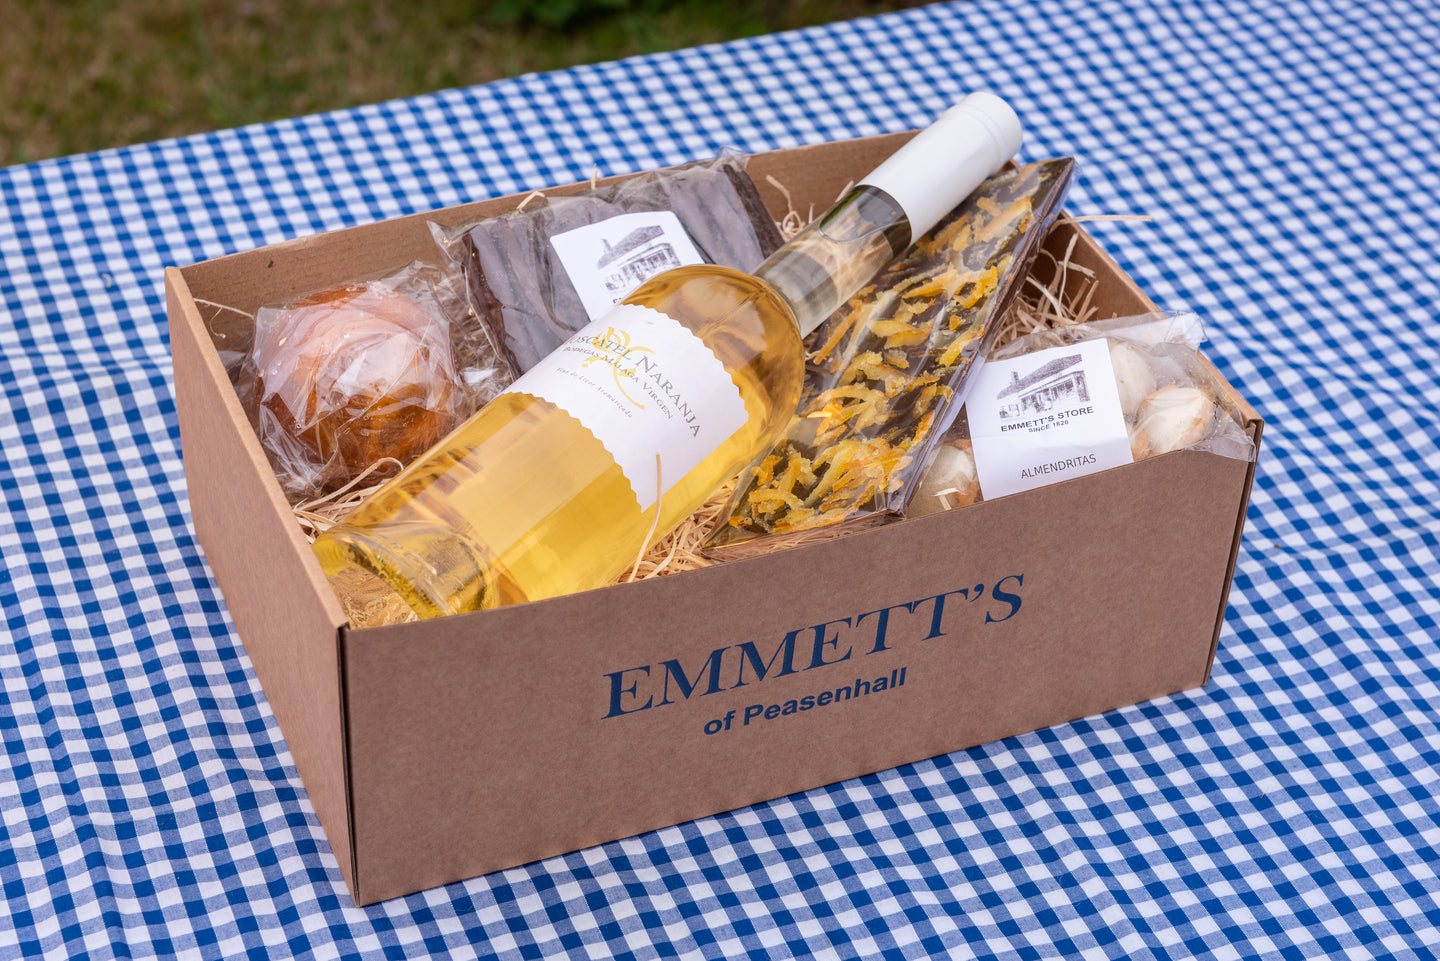 Emmett's Orange Gift Box - Emmett's